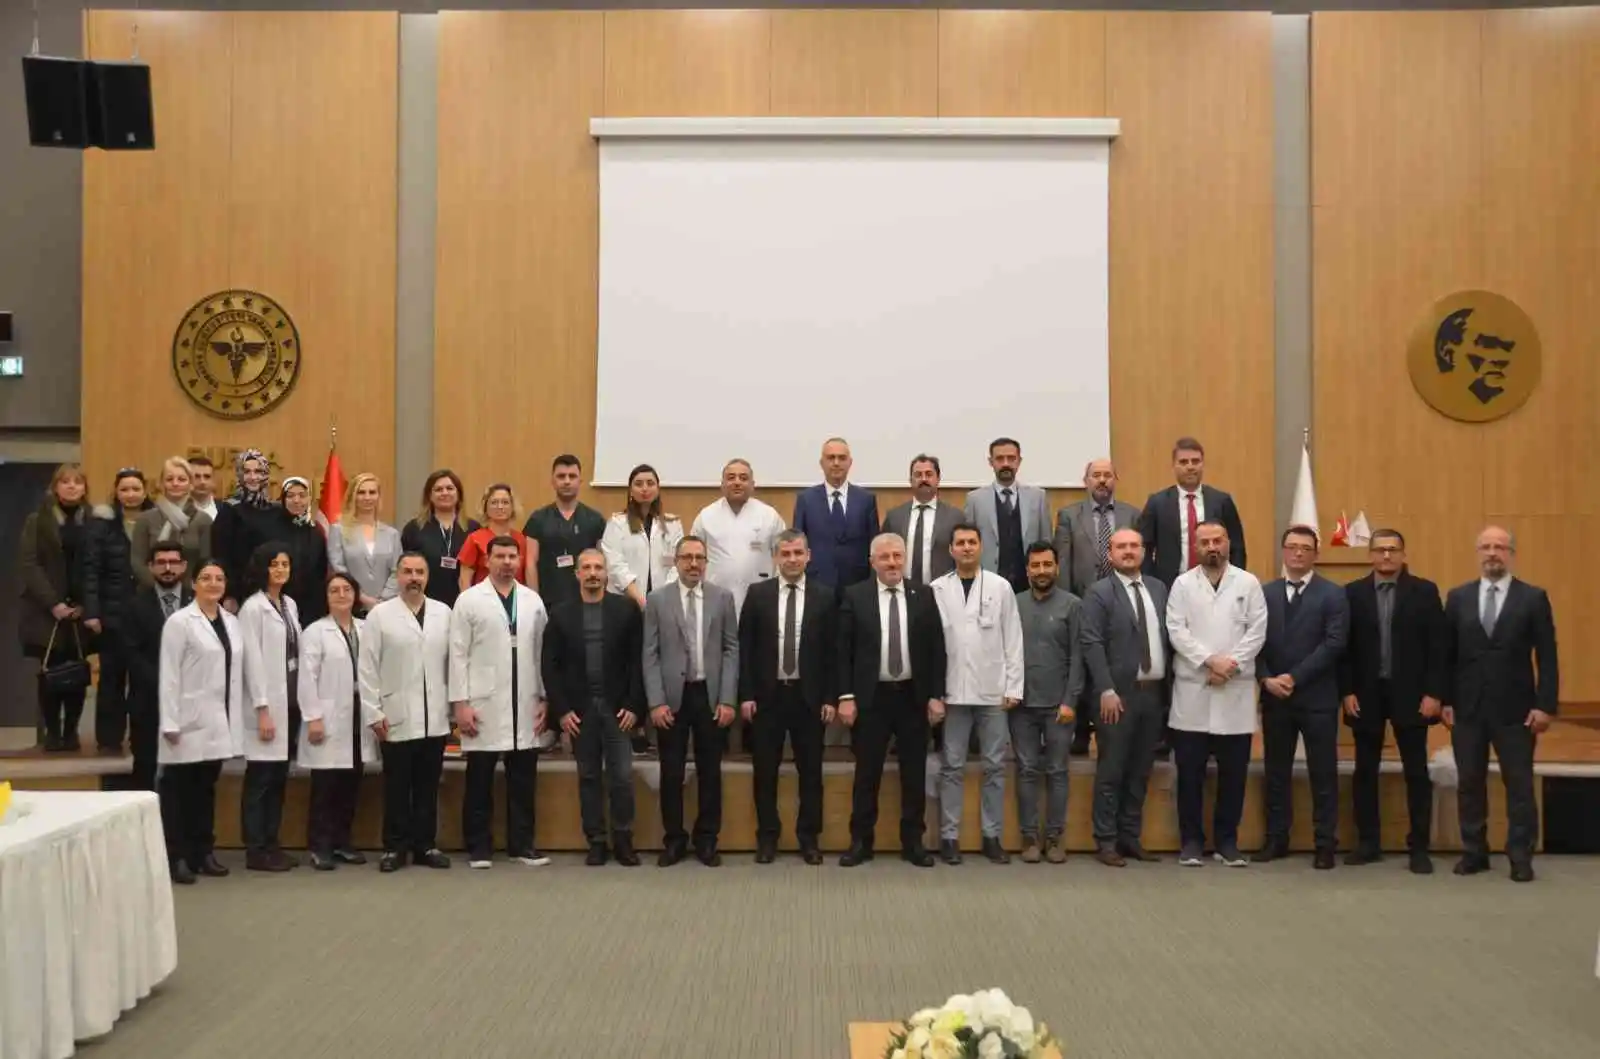 Bursa Şehir Hastanesi organ nakli hizmetine başlayacak
